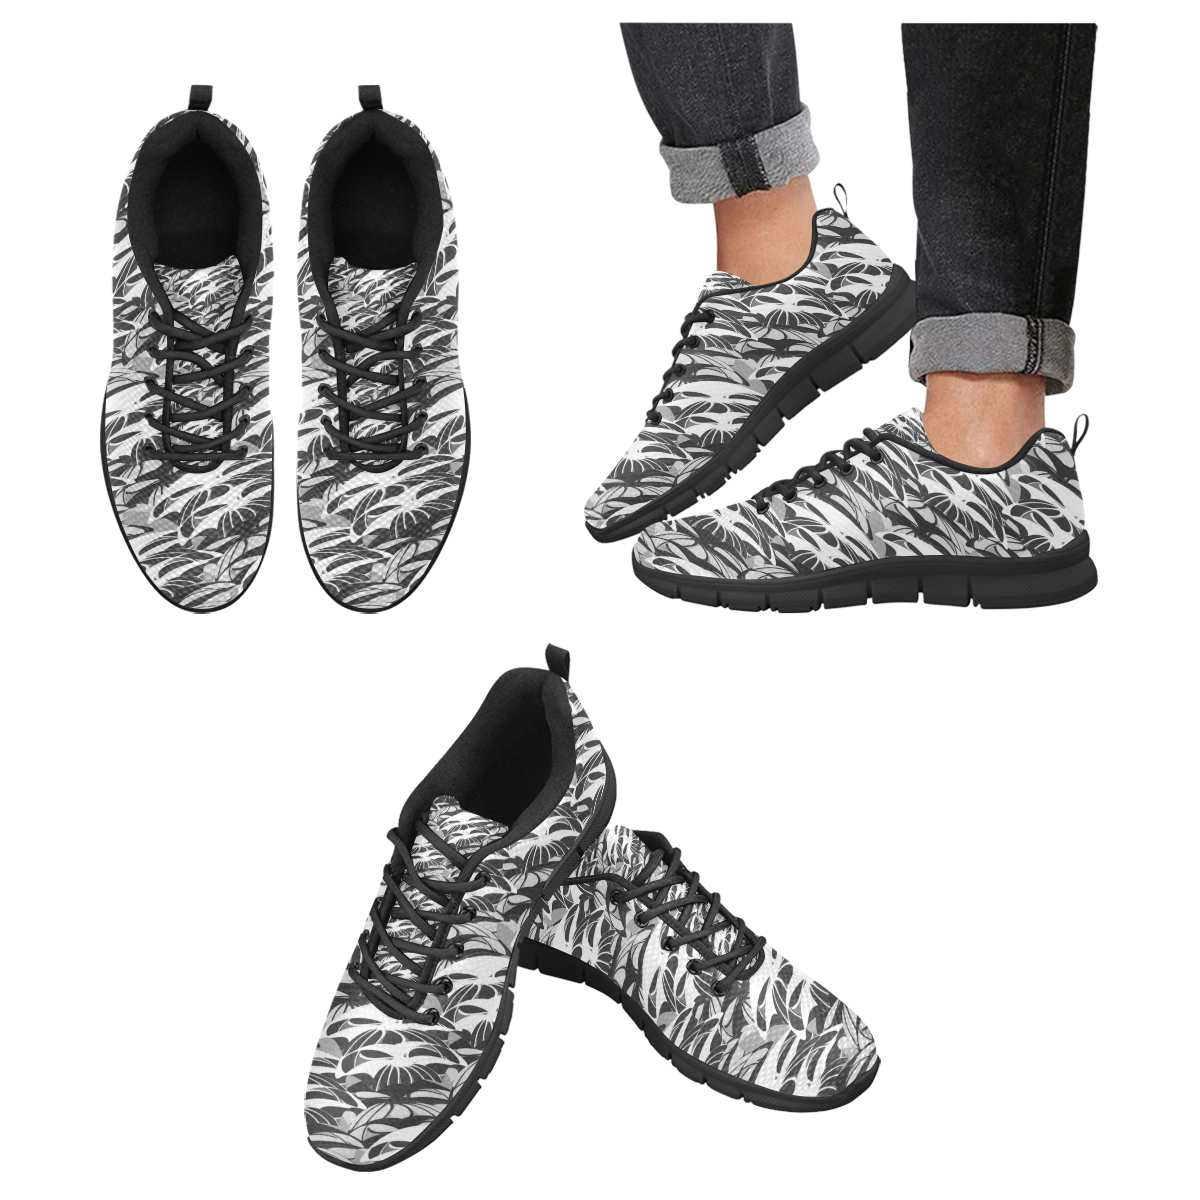 Alien Troops - Black & White (Black) Men's Breathable Running Shoes (Model 055)